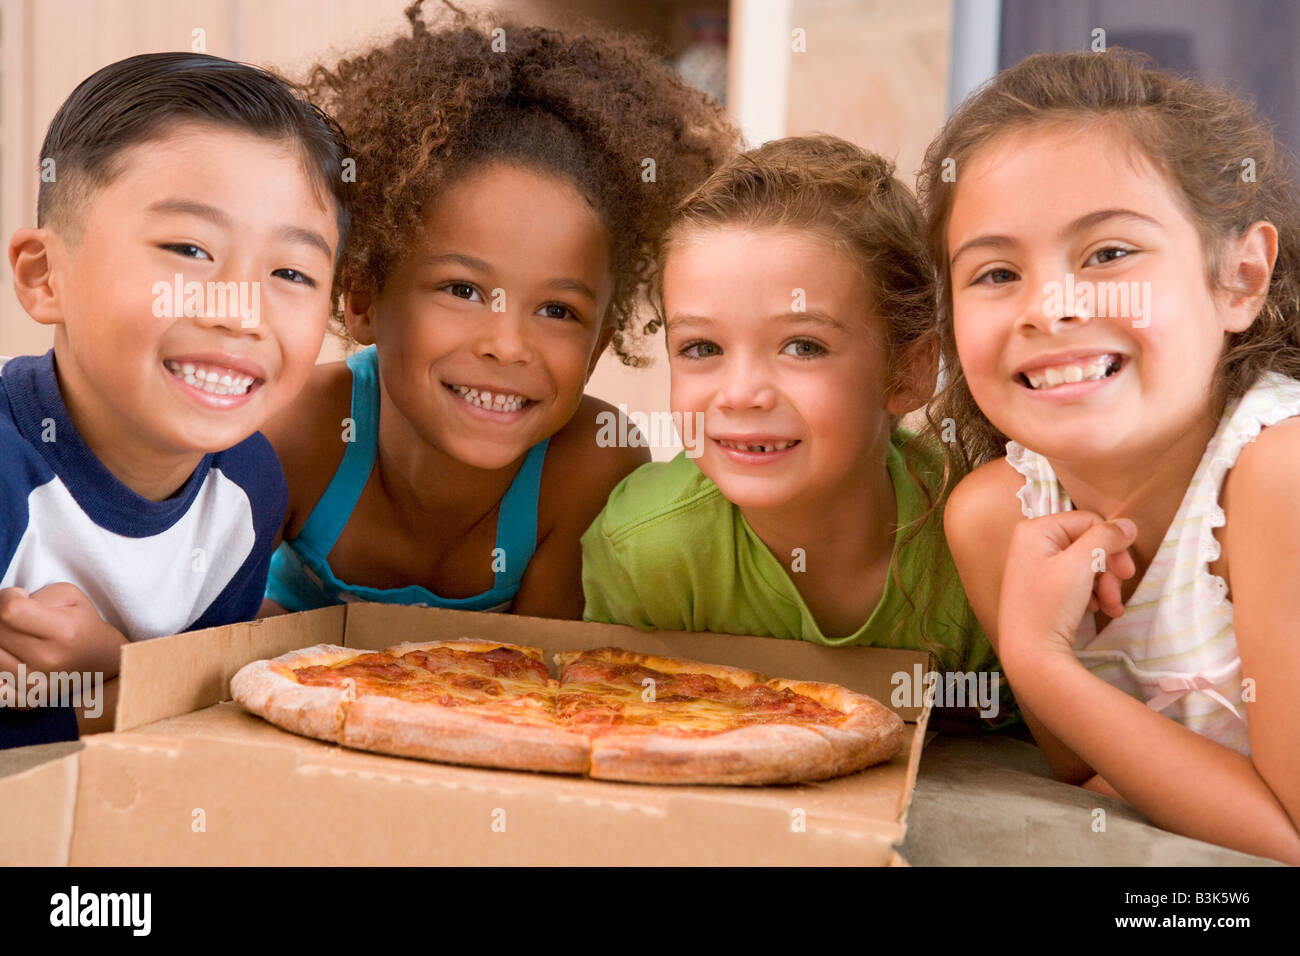 Vier kleine Kinder im Haus mit Pizza lächelnd Stockfoto